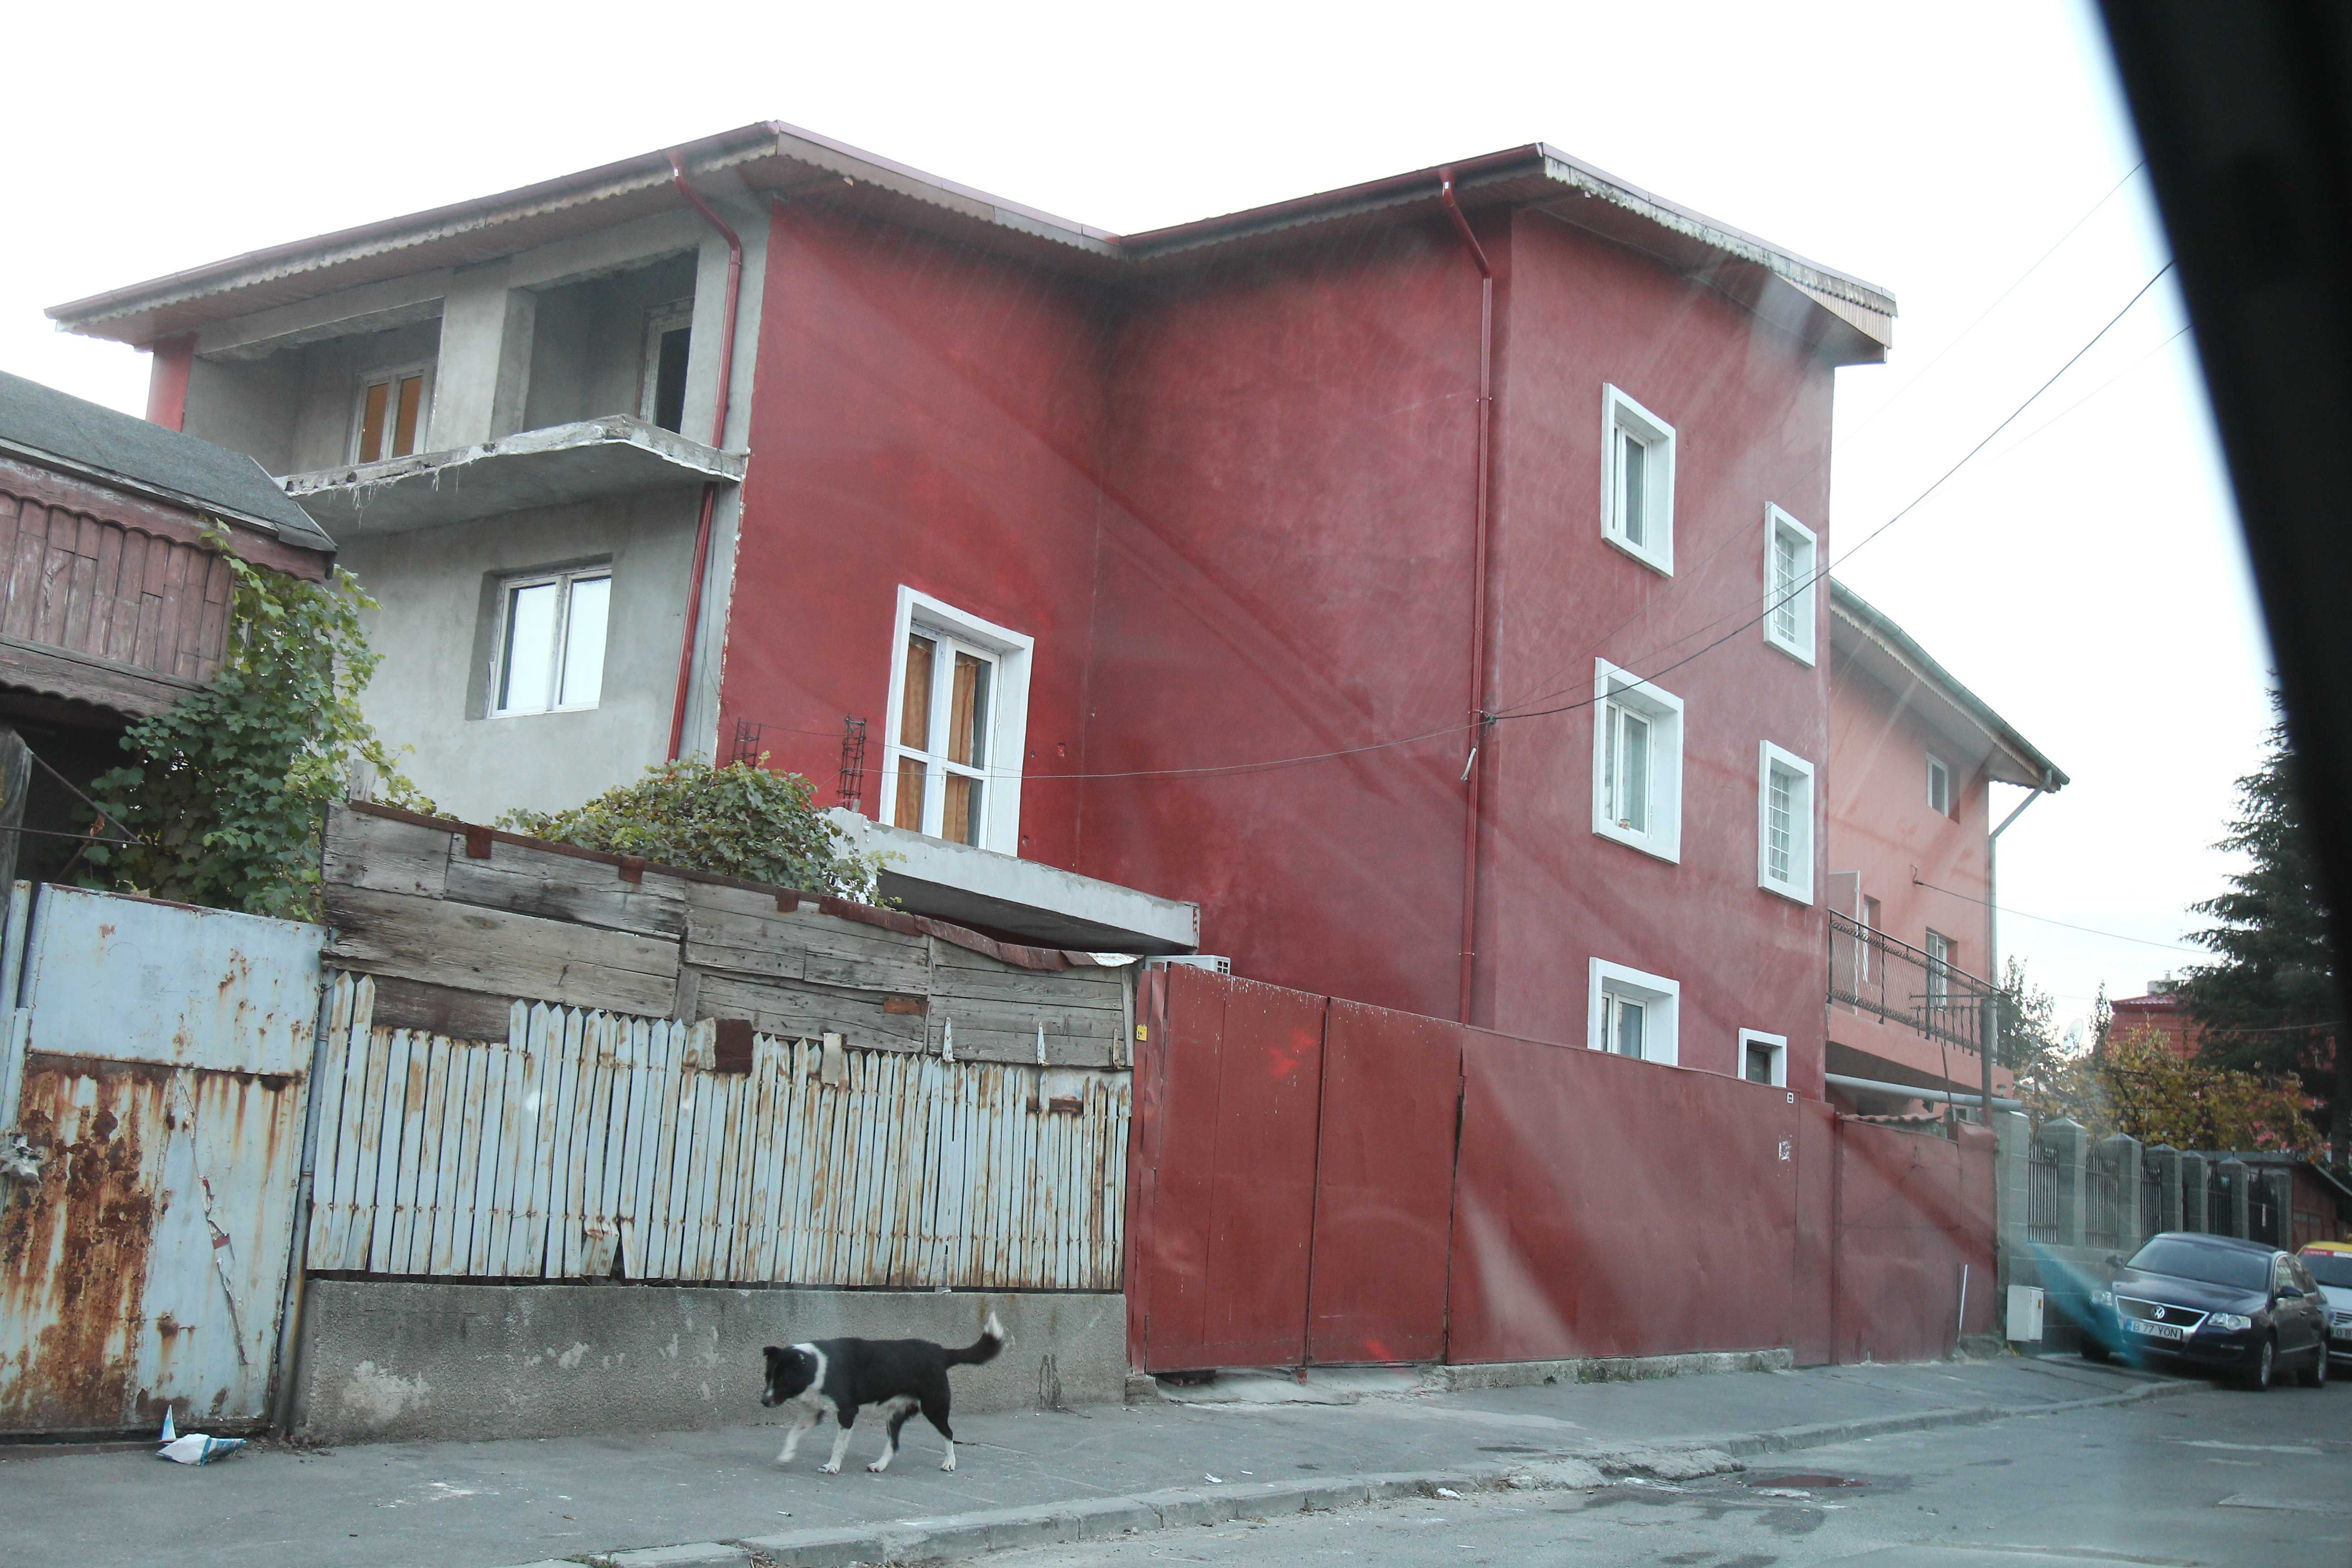 Vasile Popescu isi inchiriase o camera intr-o vila din zona Baicului